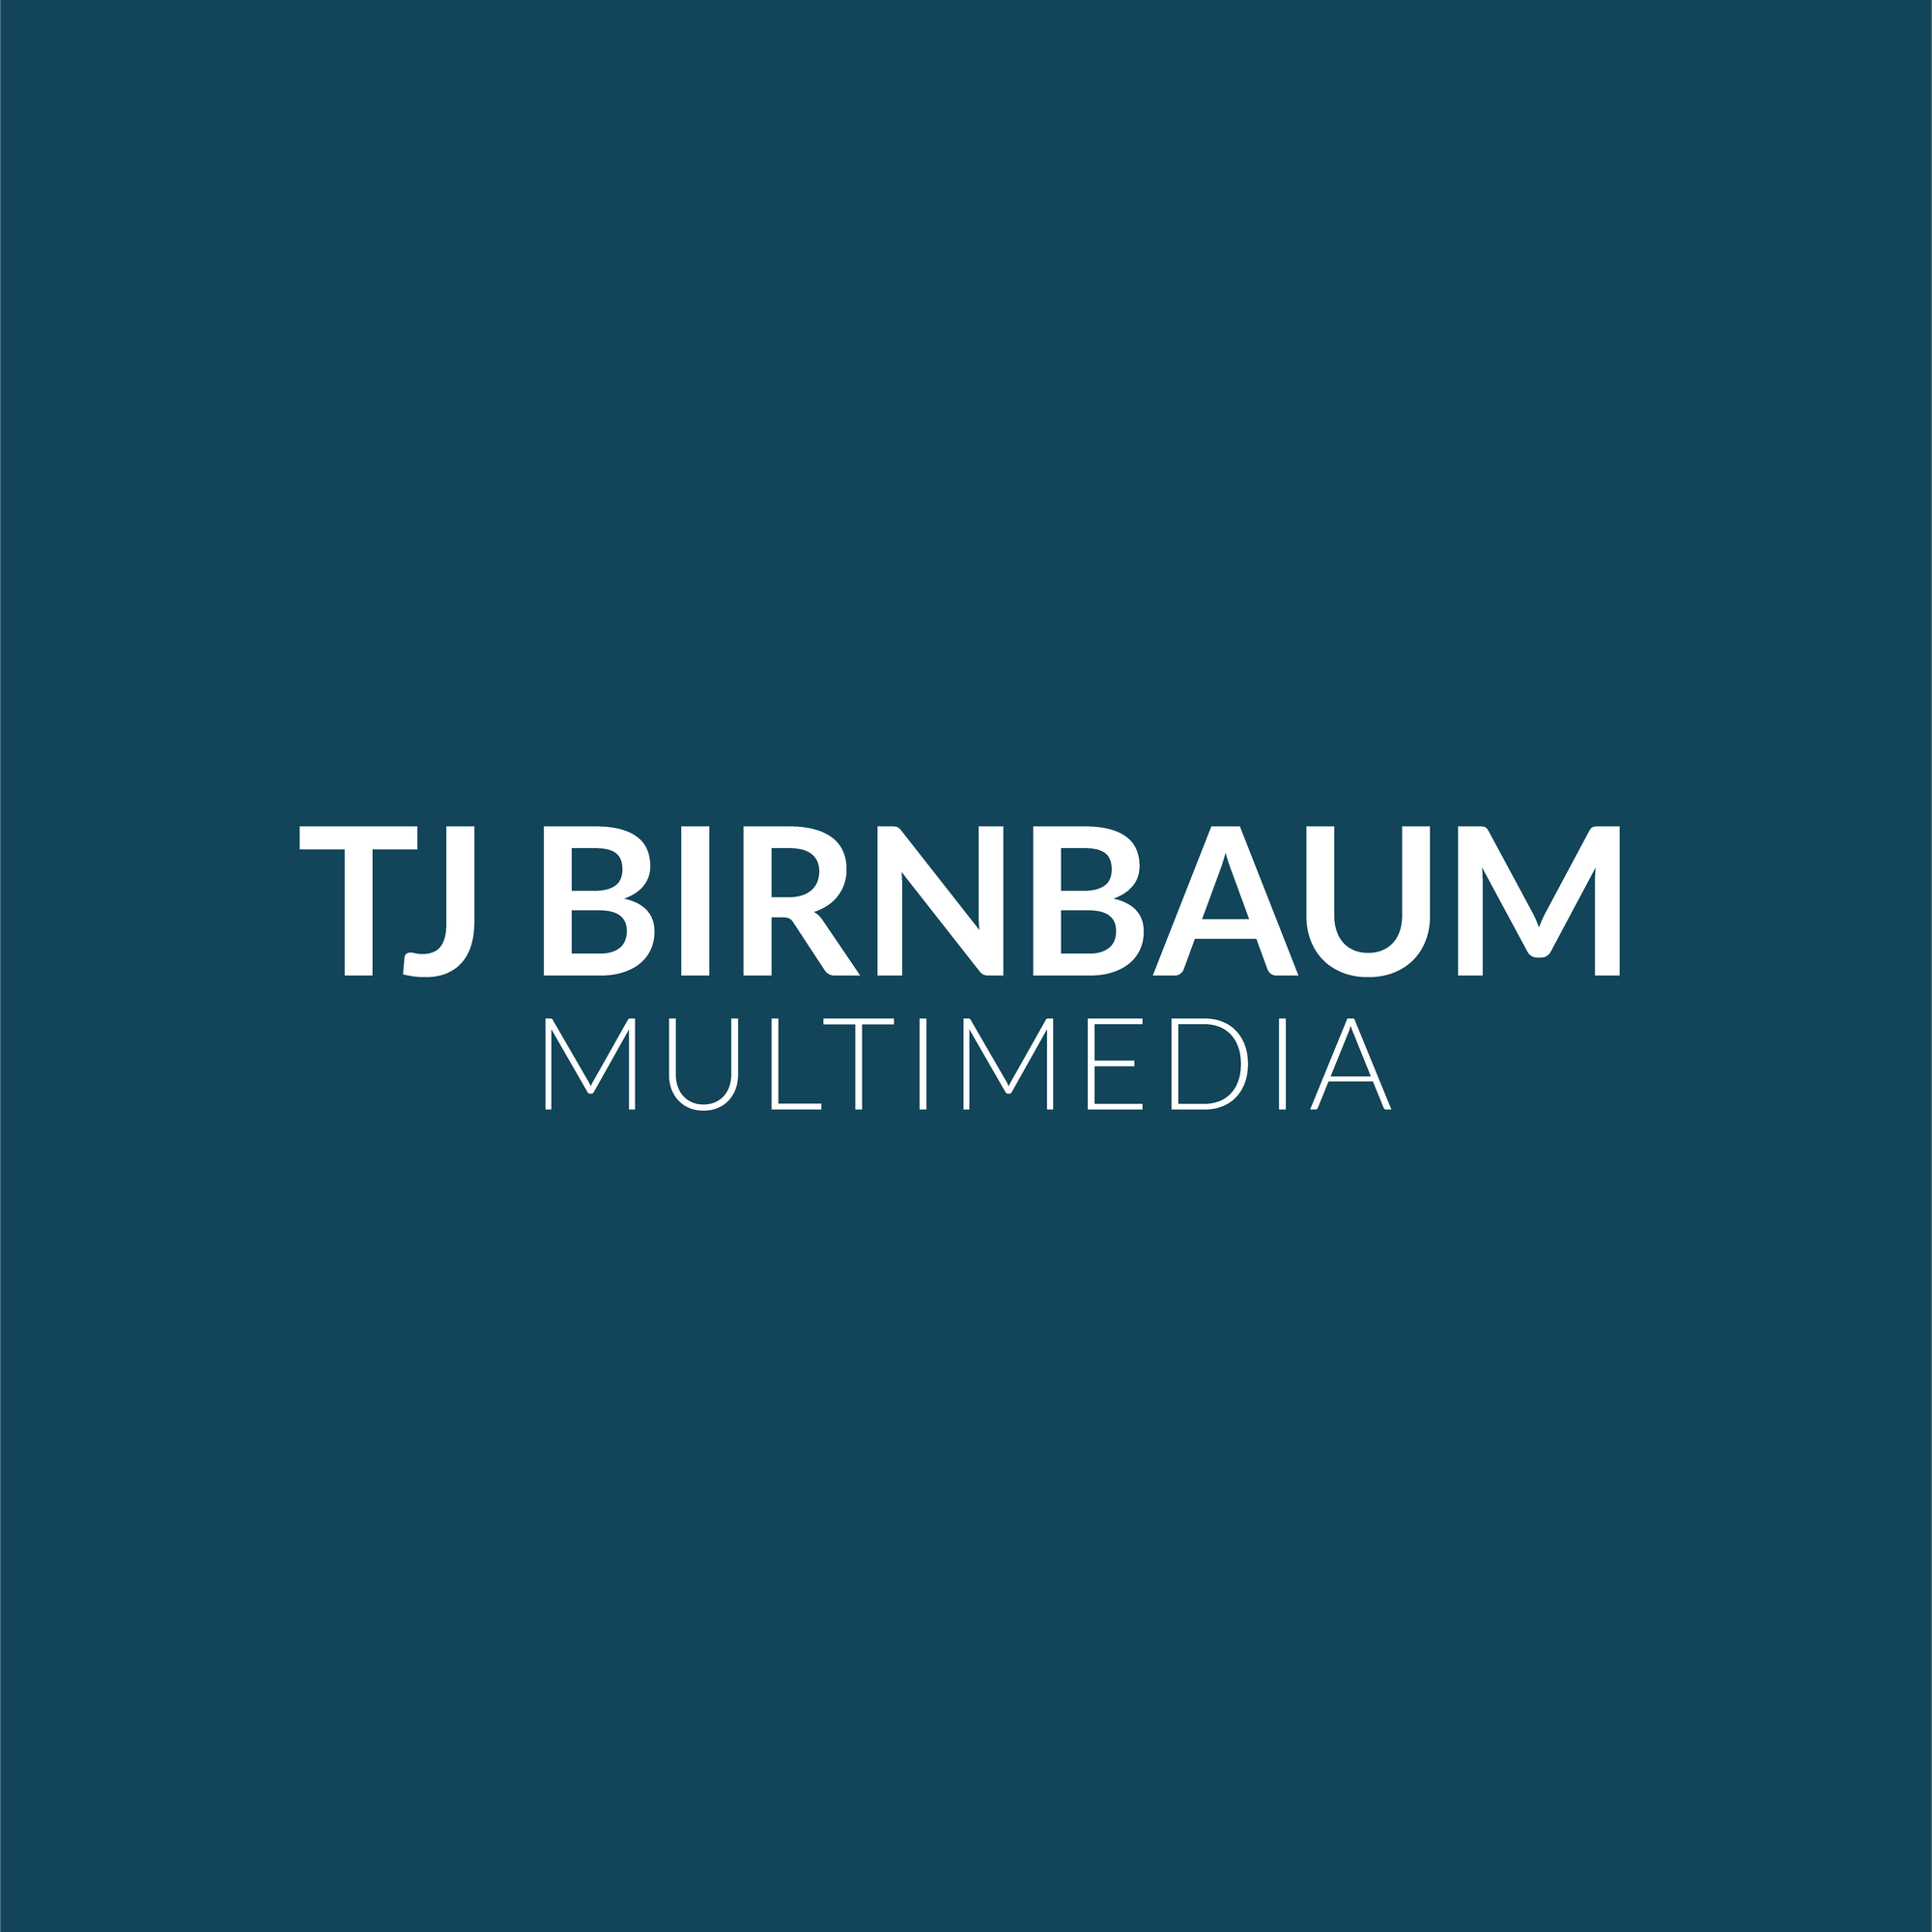 TJ Birnbaum Multimedia